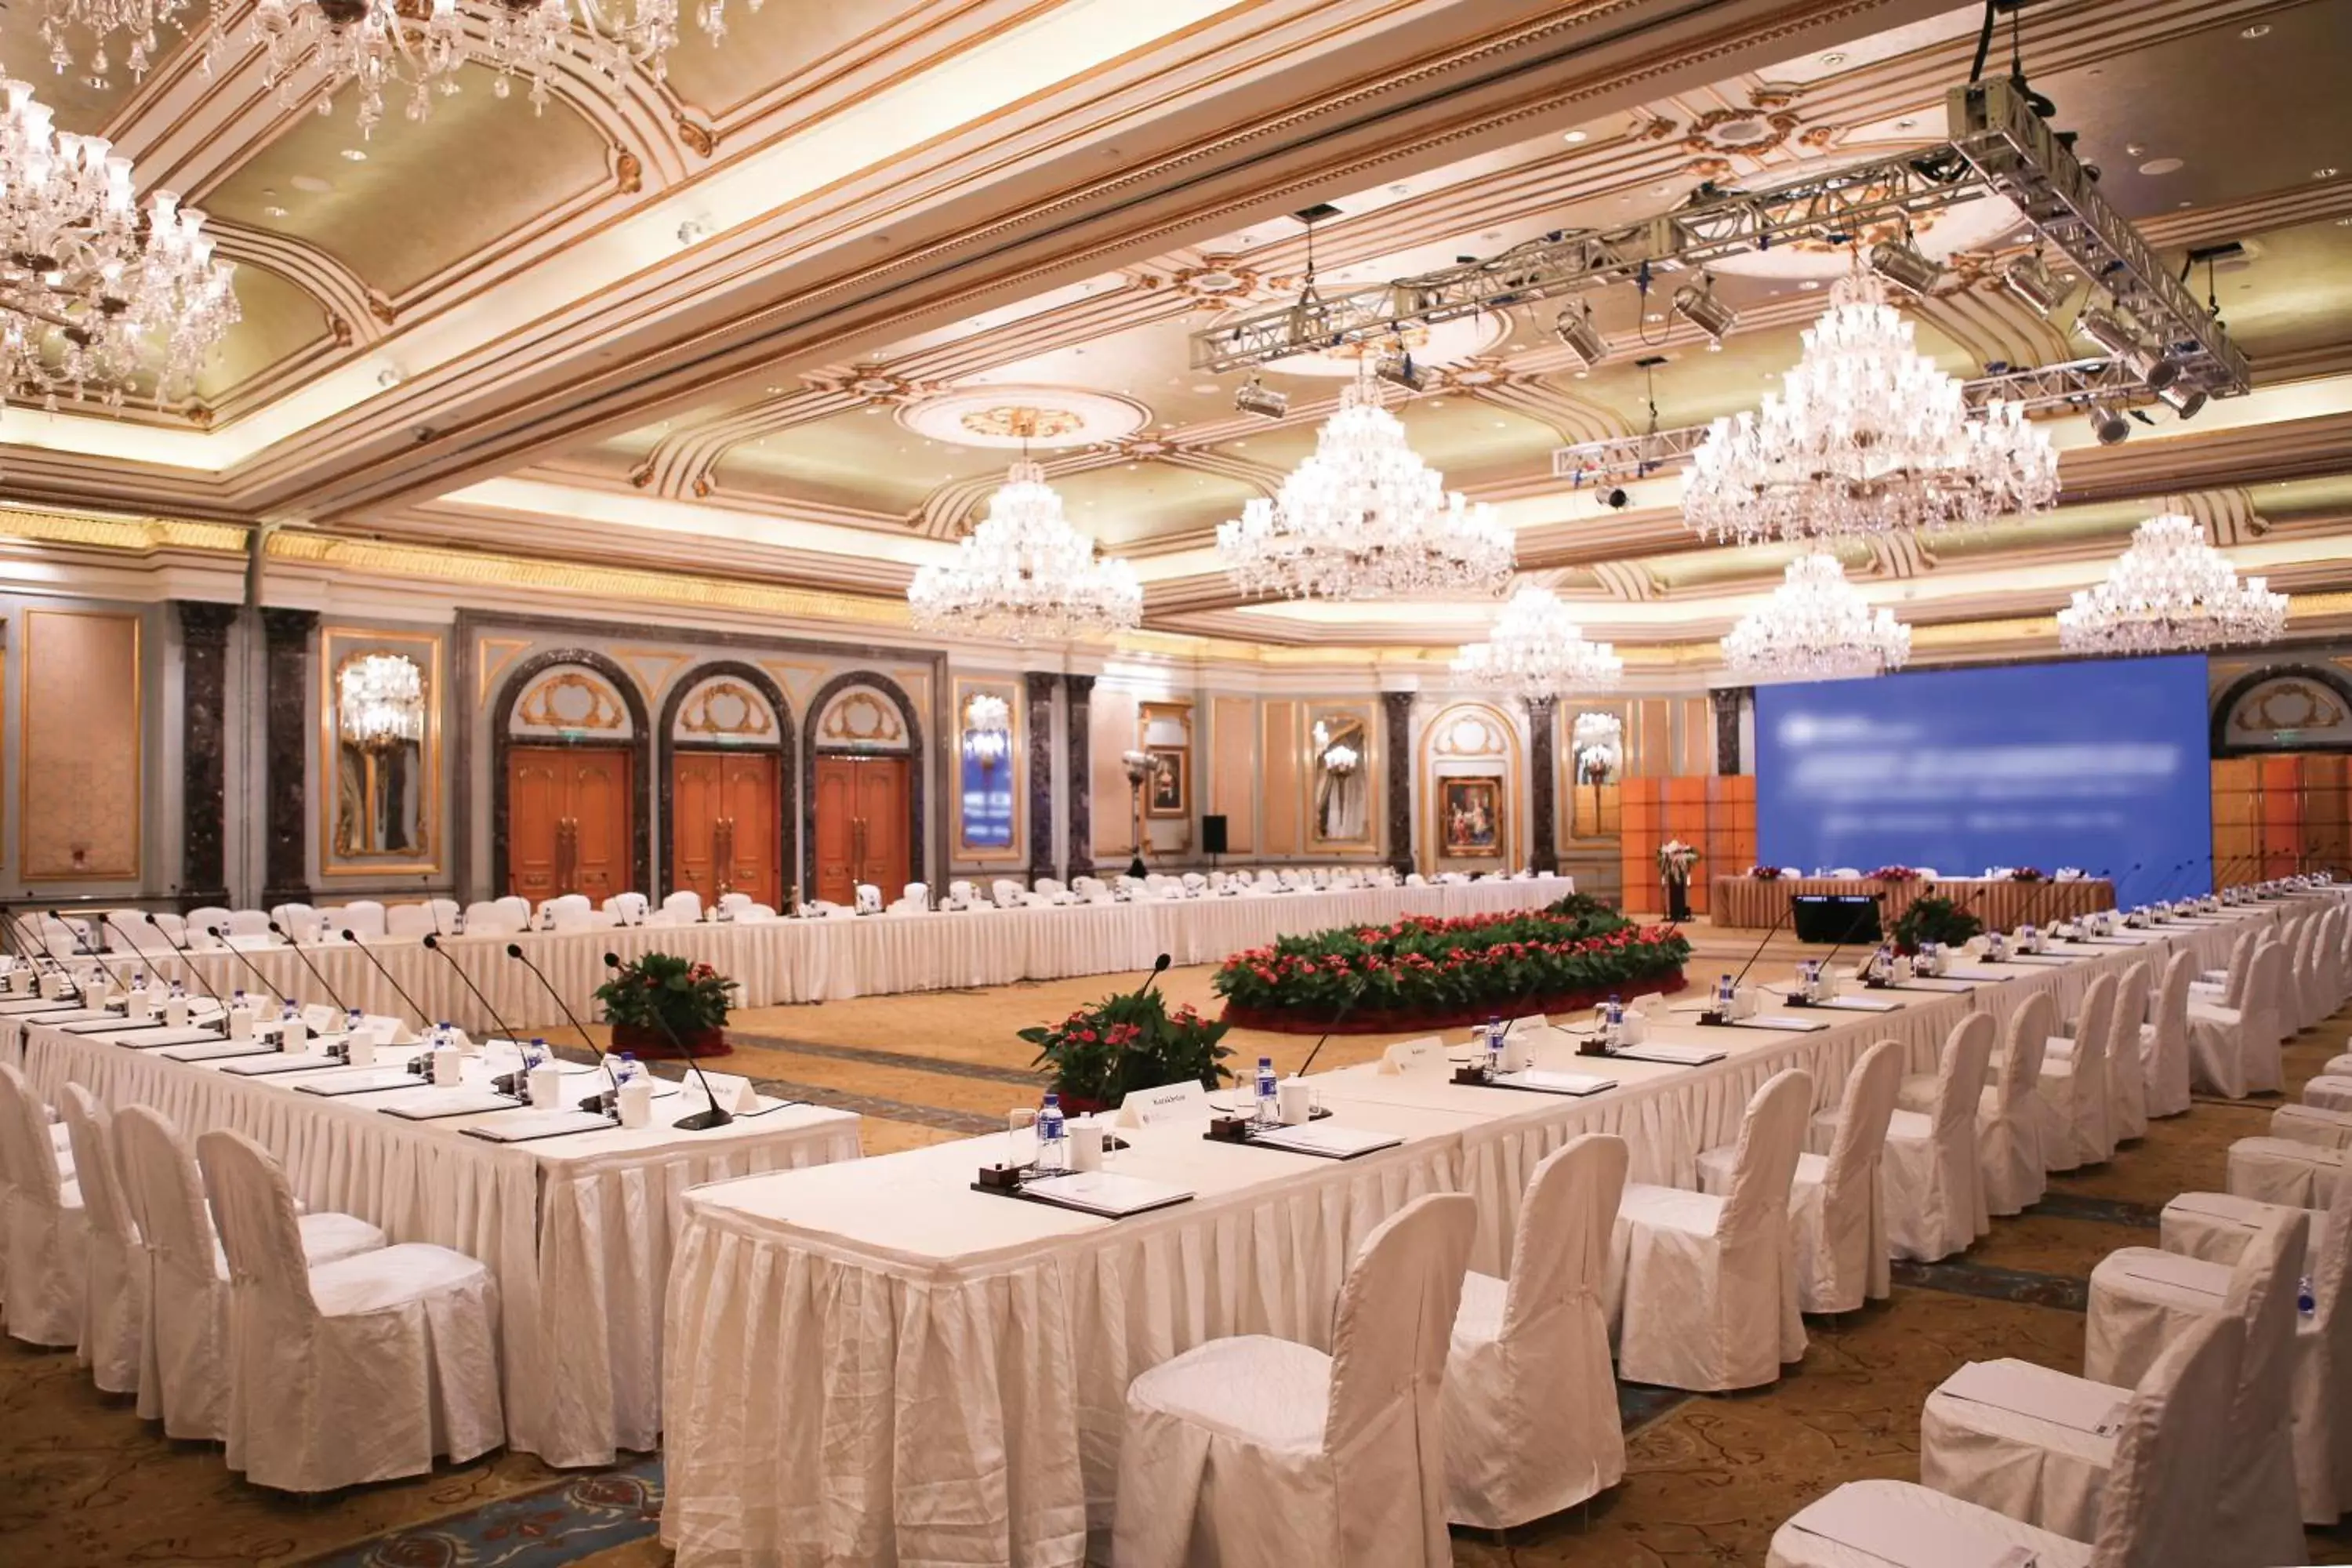 Banquet/Function facilities, Banquet Facilities in Legendale Hotel Beijing